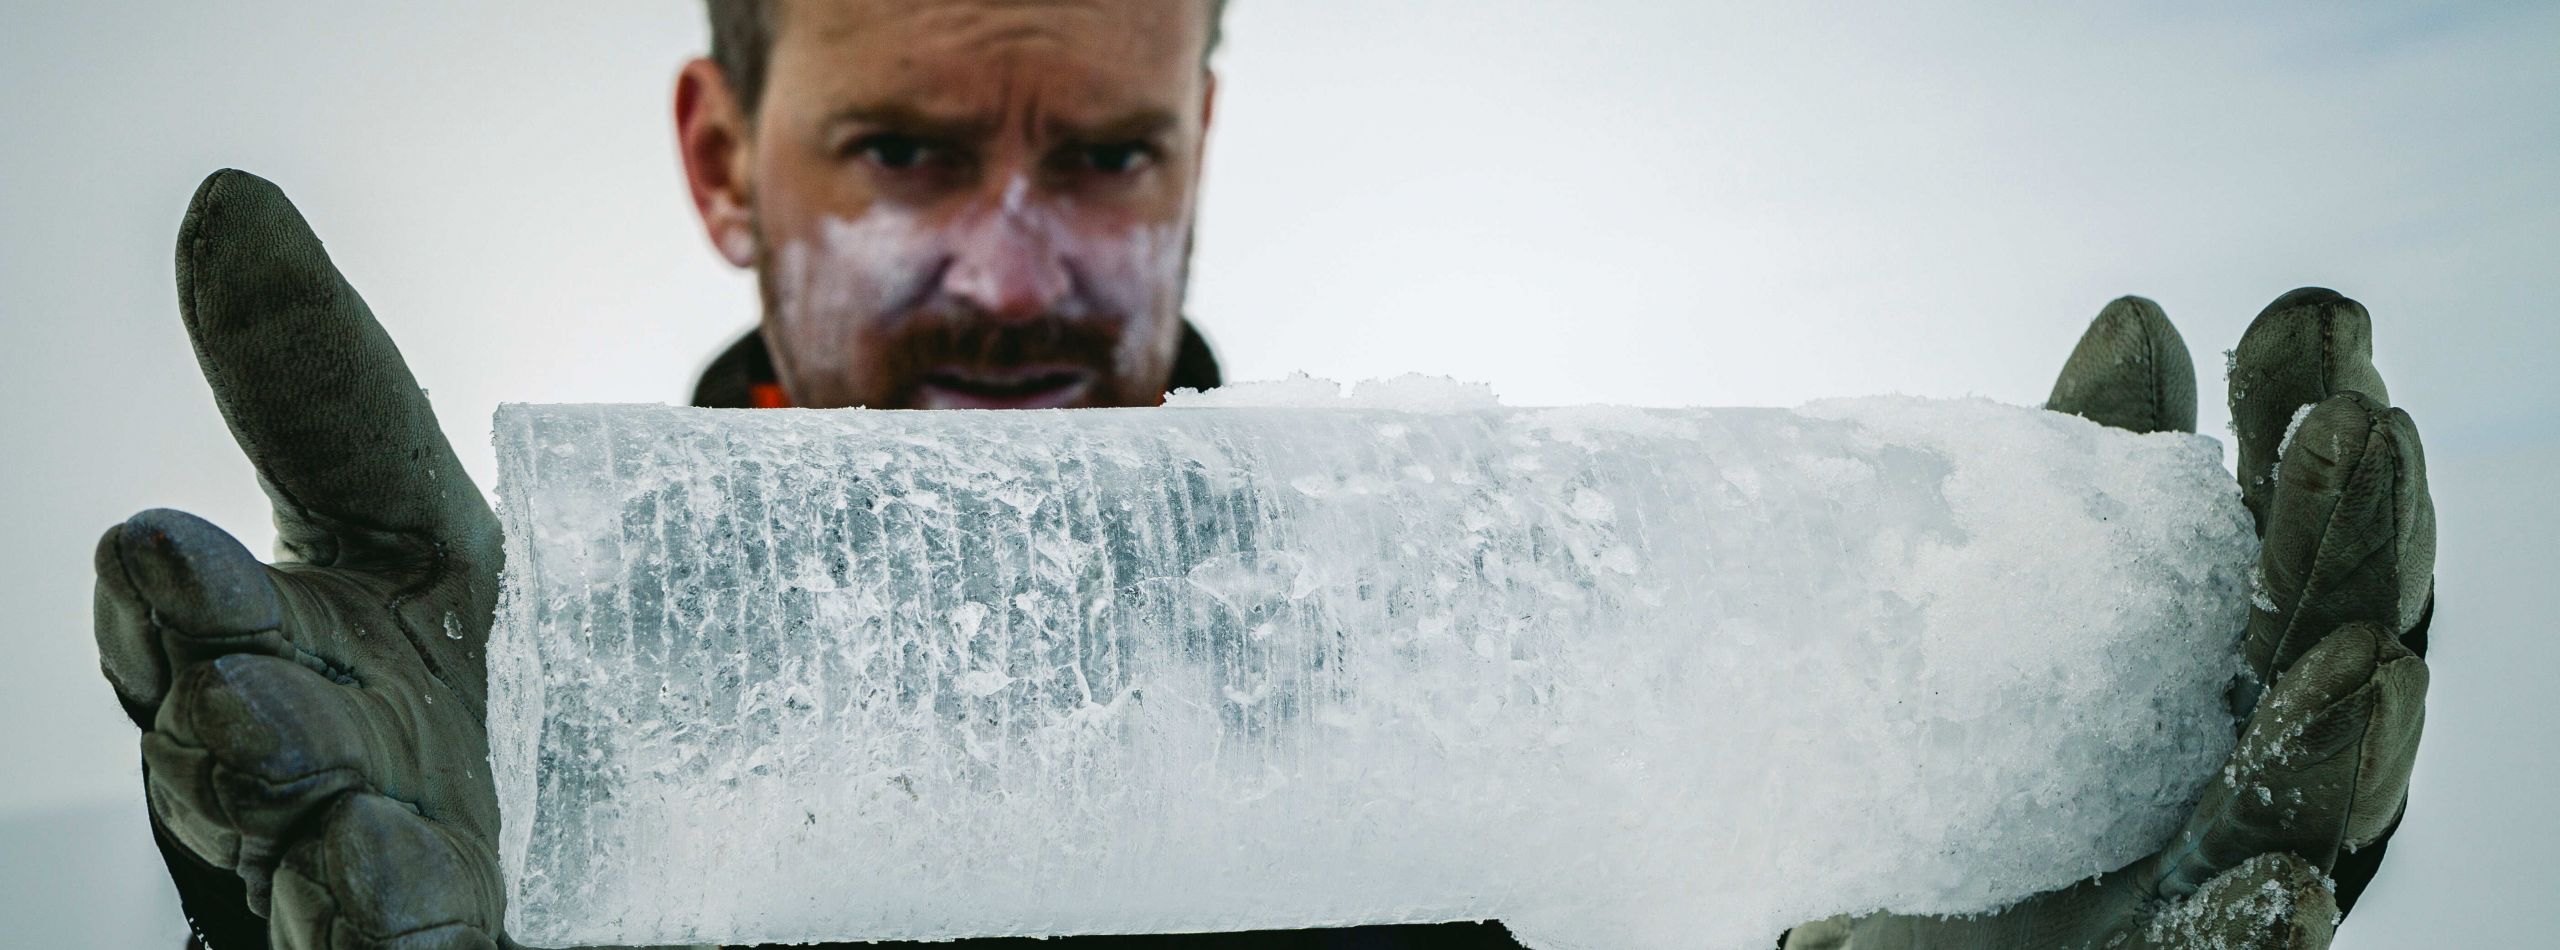 Into the Ice: Groepstherapie Klimaatangst